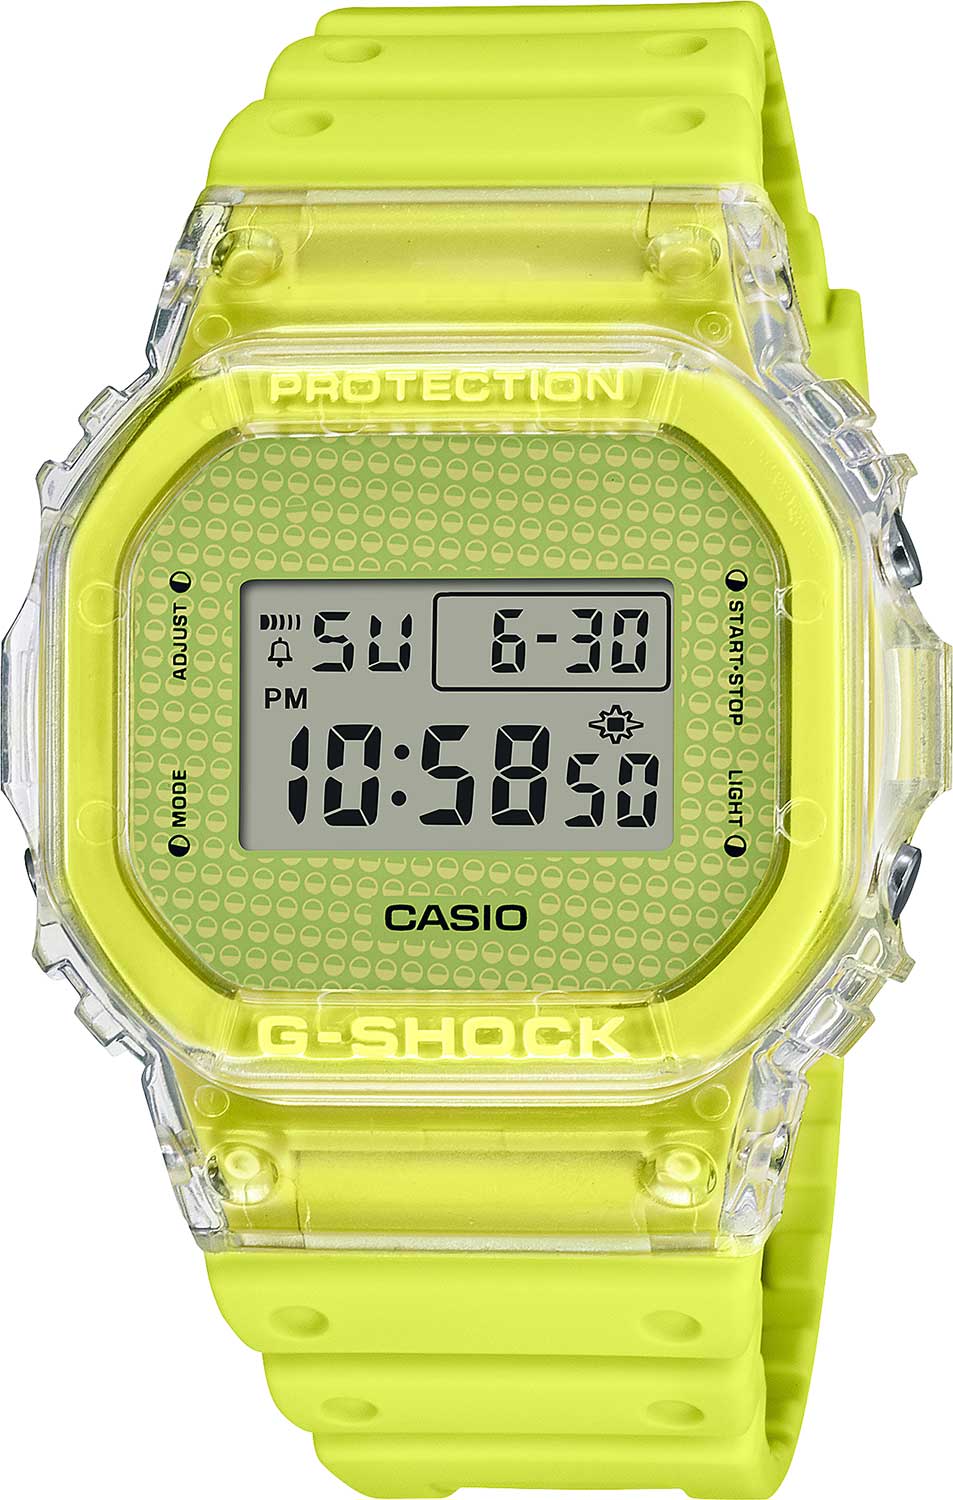    Casio G-SHOCK DW-5600GL-9E  